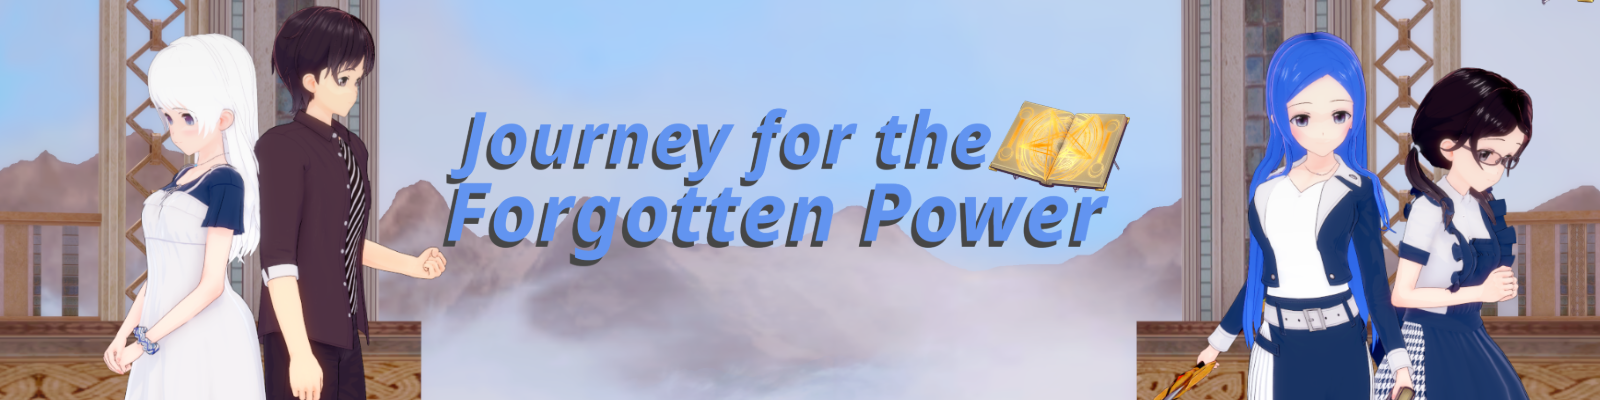 Journey for the Forgotten Power poster